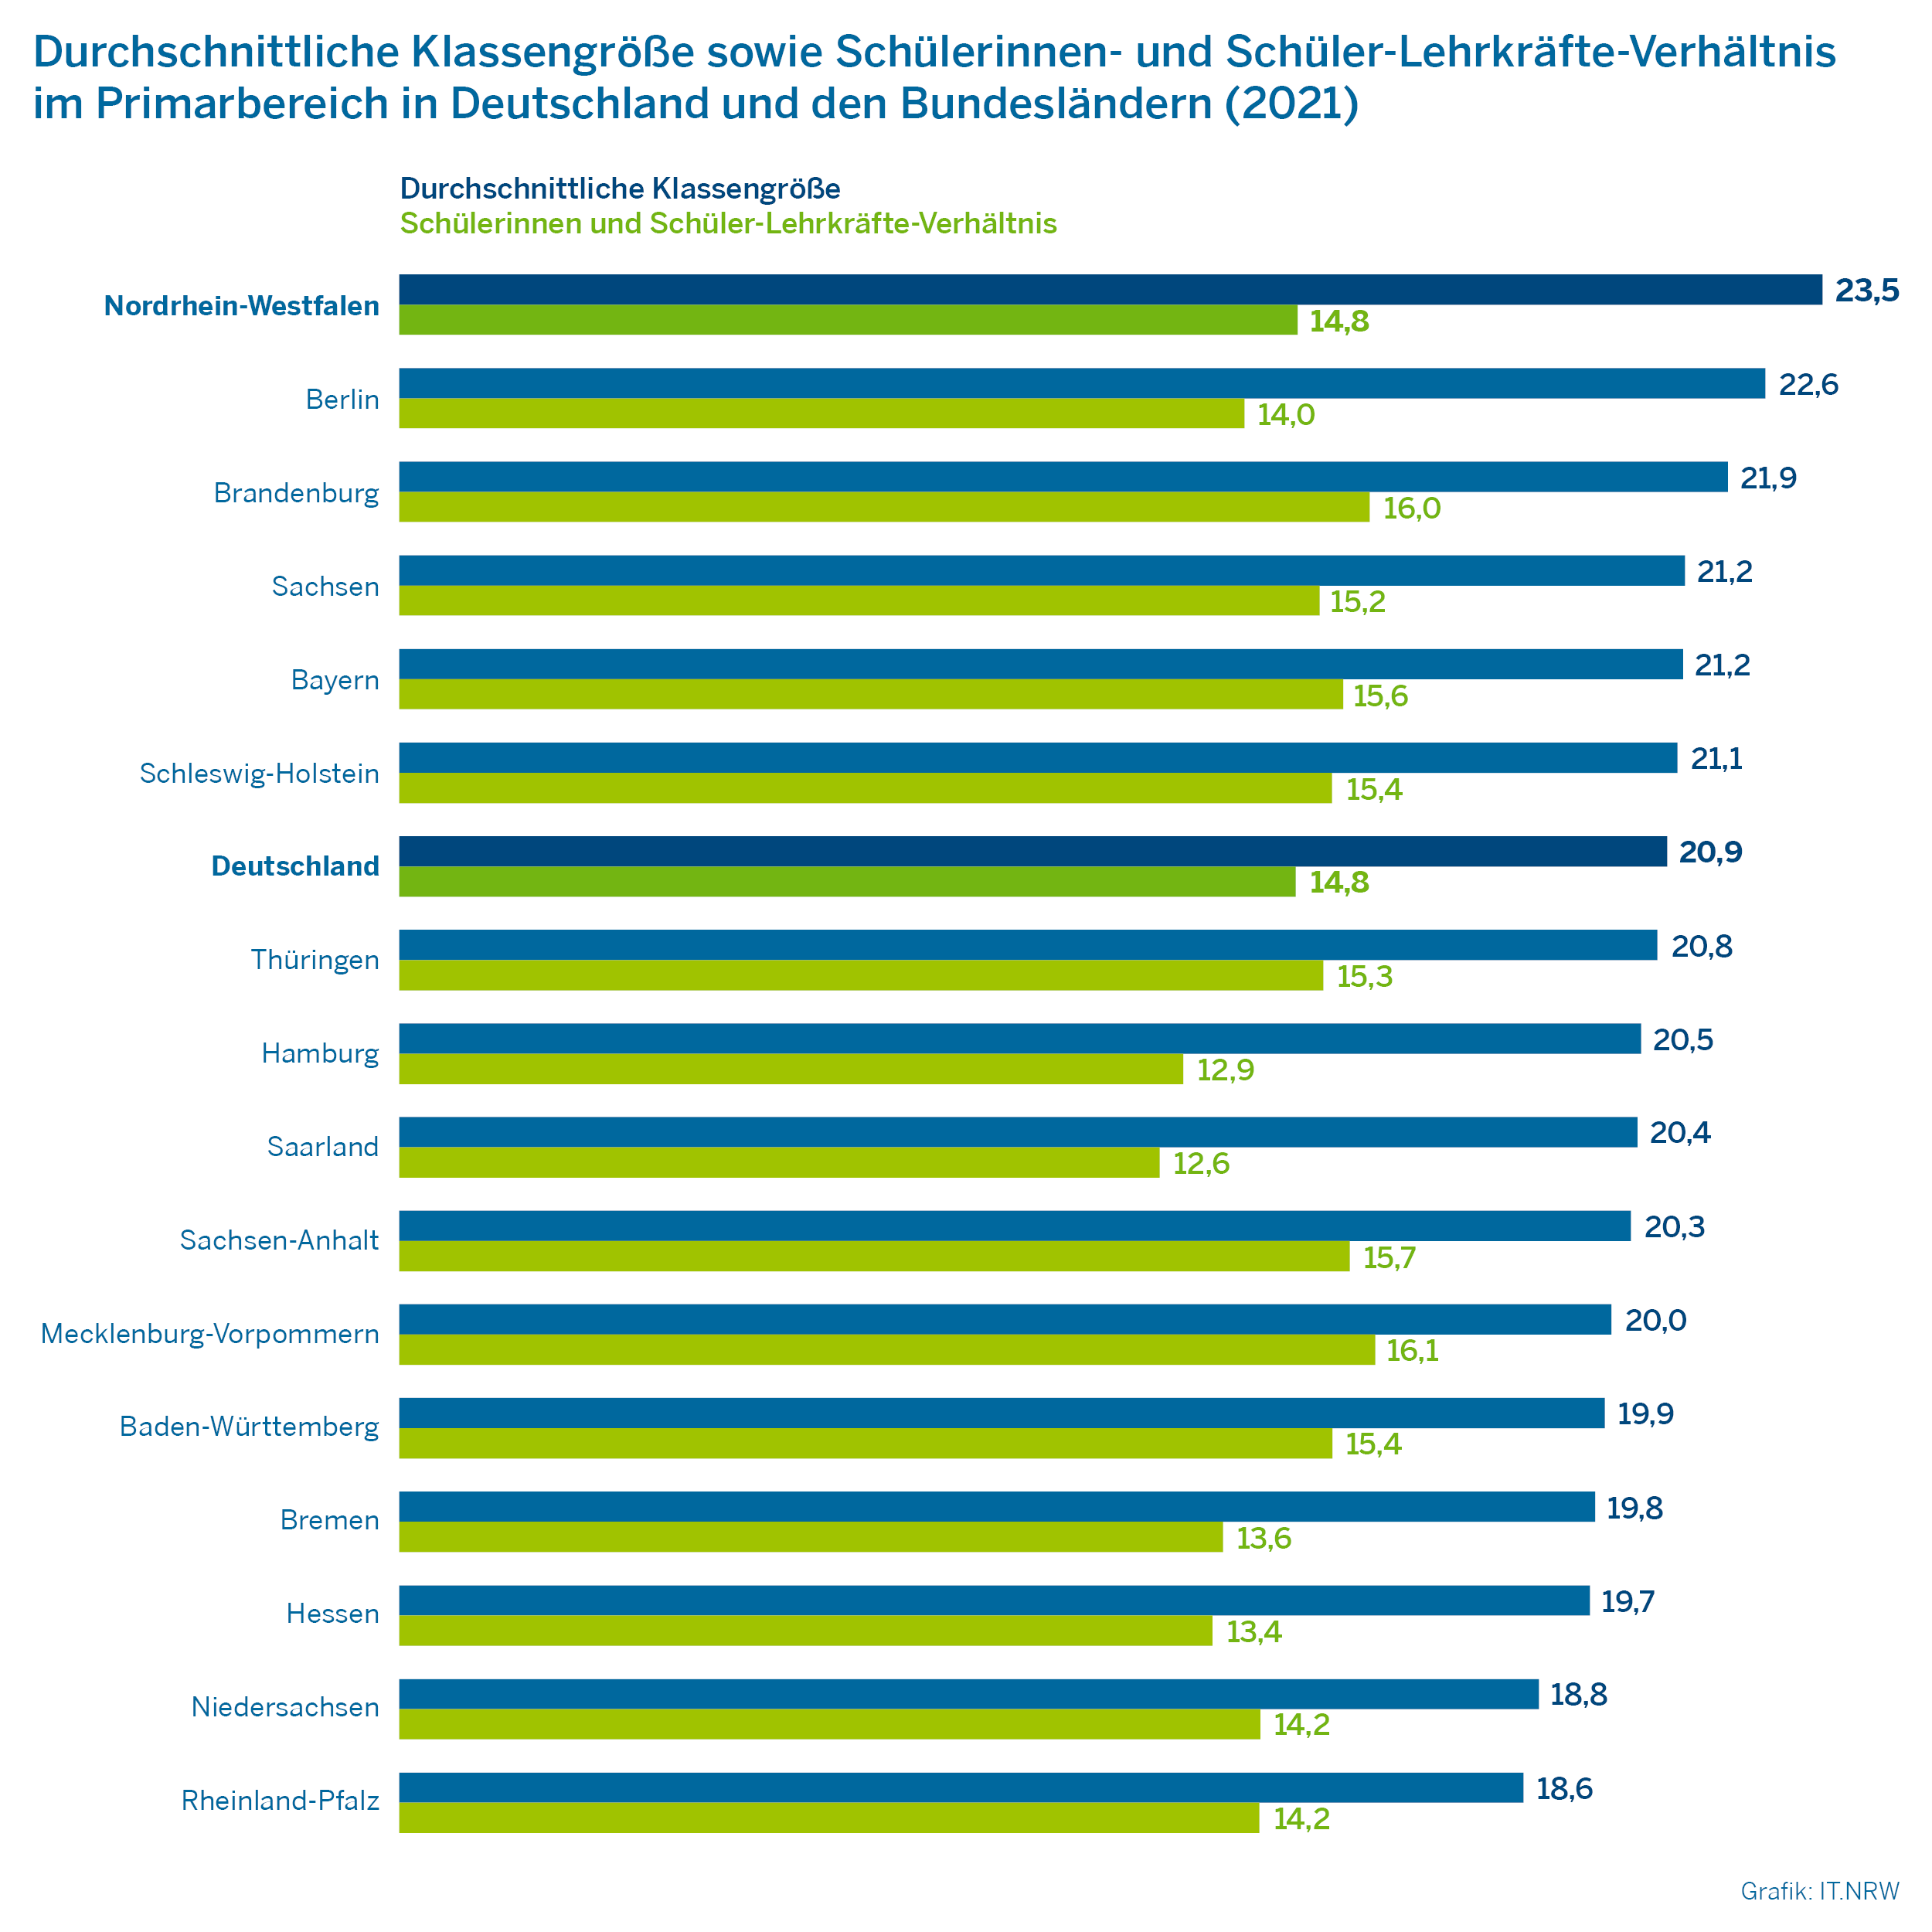 Durchschnittliche Klassengröße sowie Schülerinnen und Schüler-Lehrkräfte-Verhältnis im Primarbereich in Deutschland und den Bundesländern (2021)